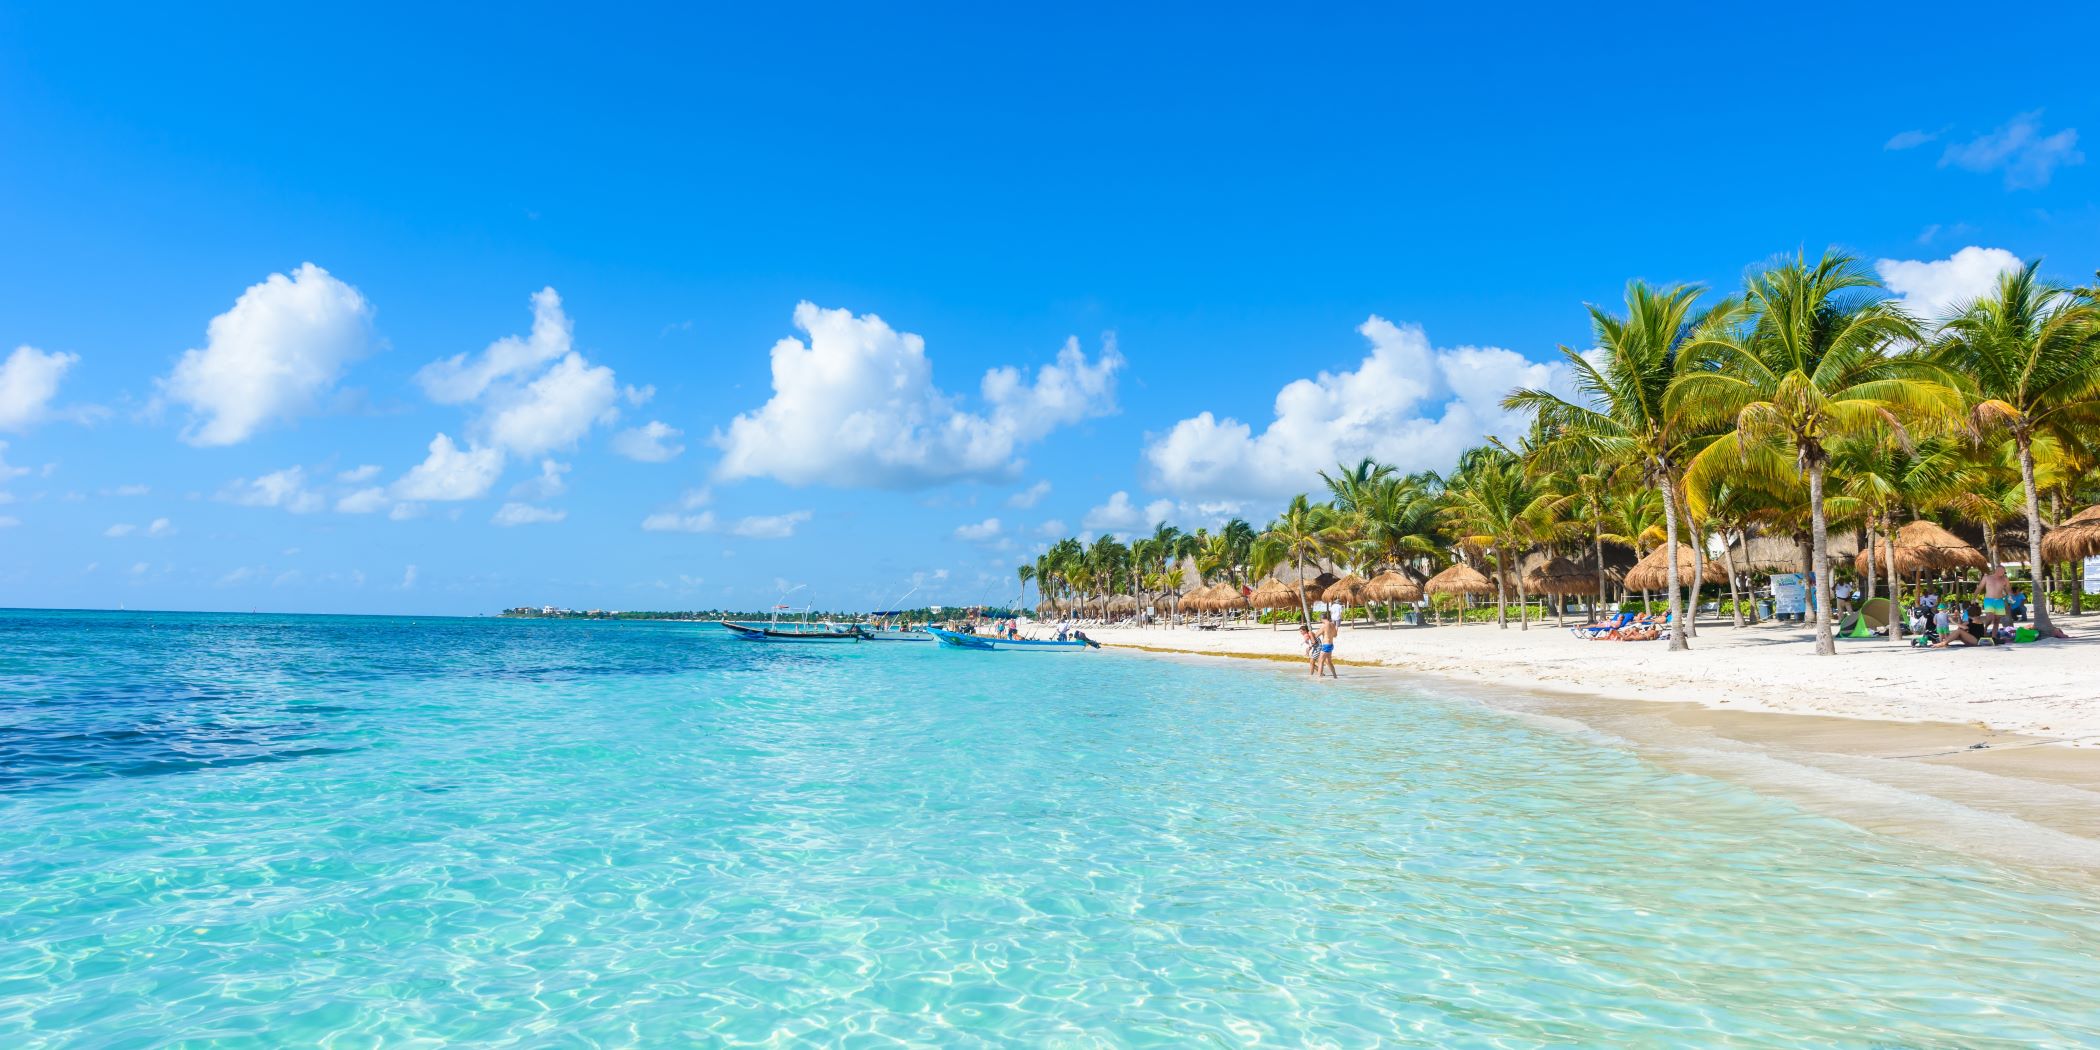 Playa de Cancún, en la Riviera Maya. Palmeras, nubes, arena y personas disfrutando el buen clima.